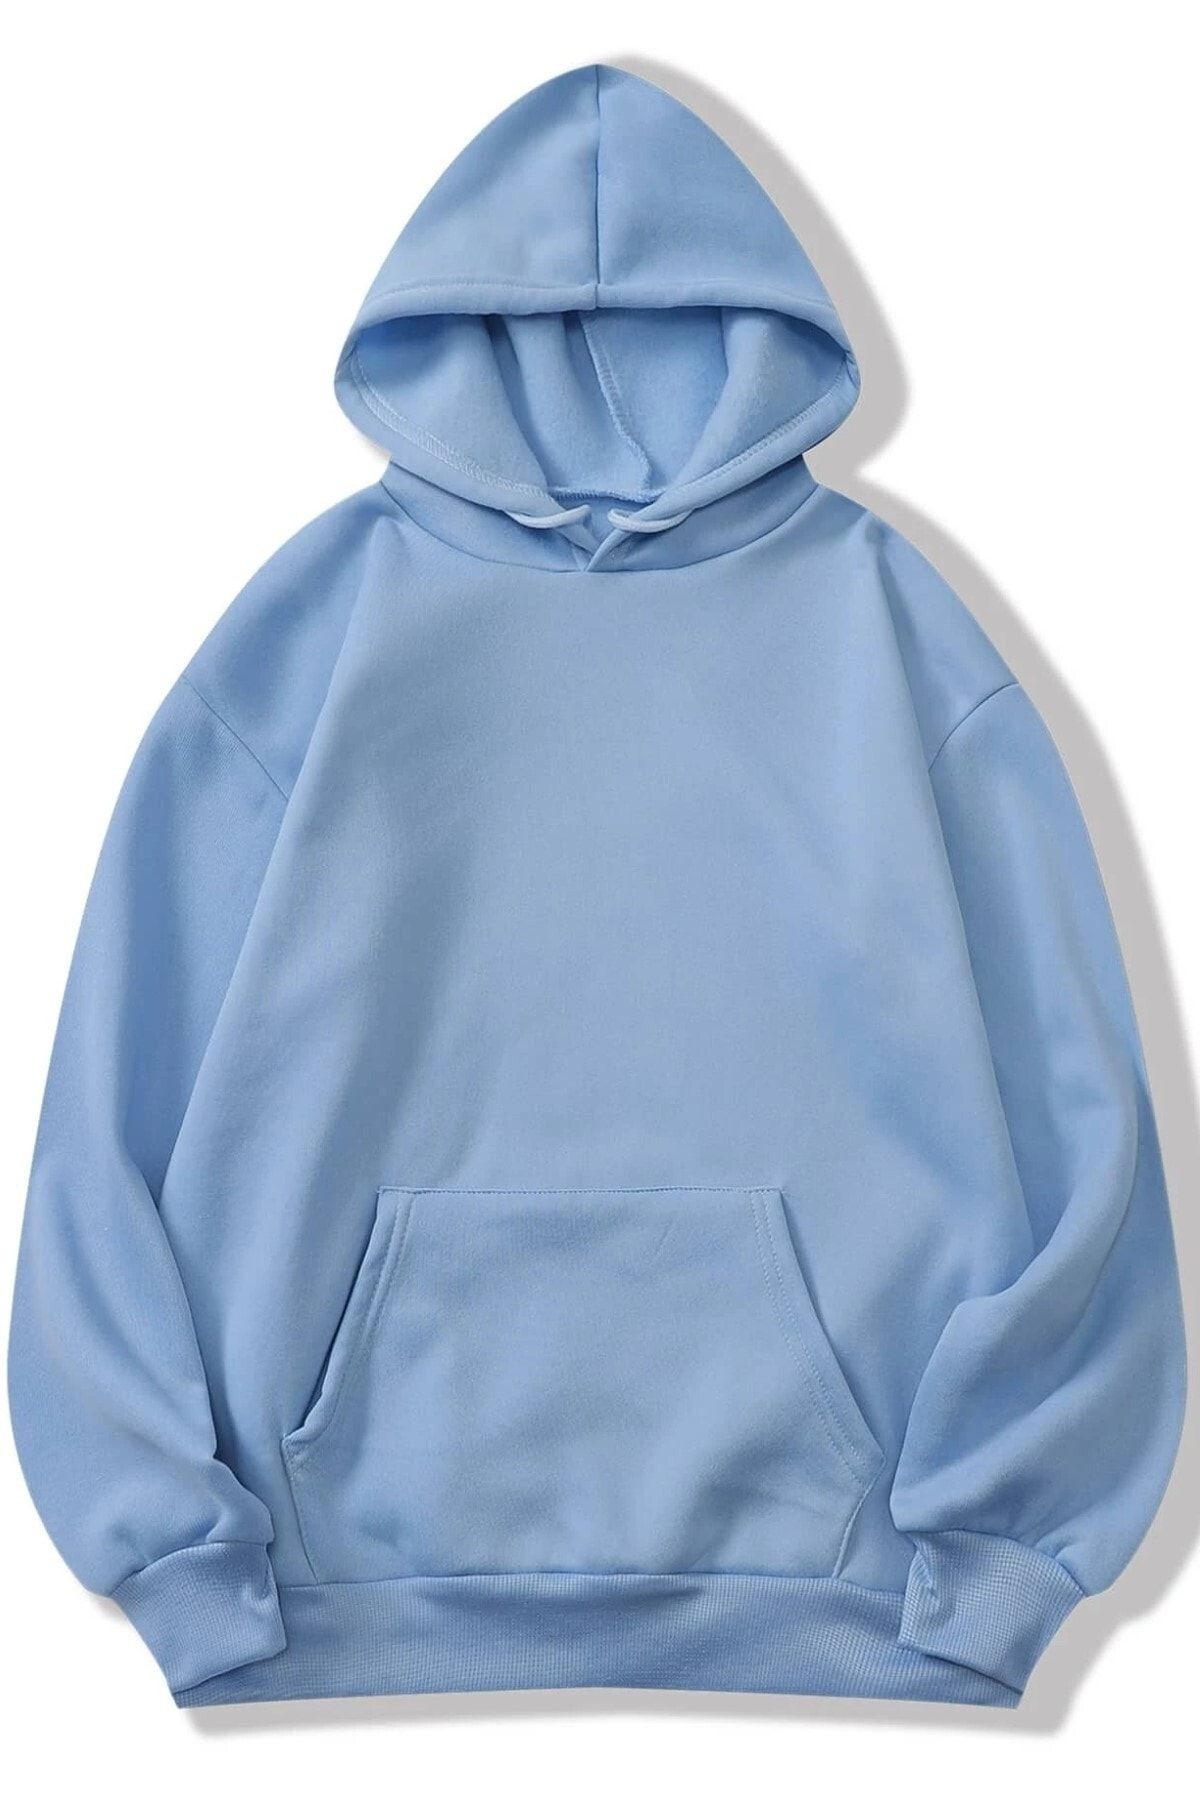 MODAGEN Unisex Bebe Mavisi Düz Basic Kapüşonlu Sweatshirt